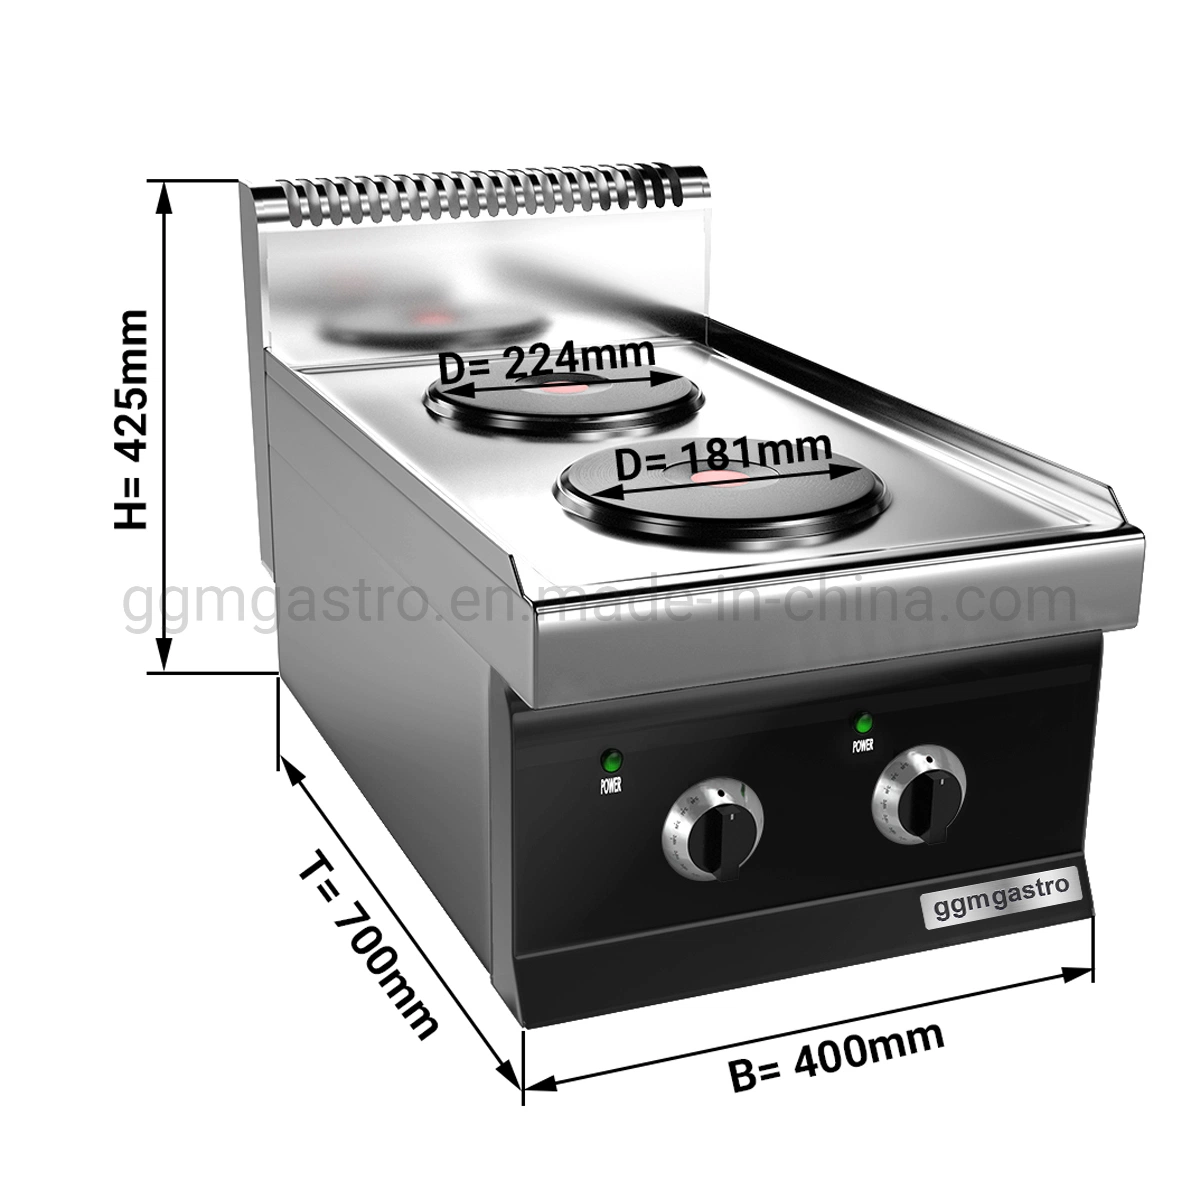 Aço inoxidável comercial de equipamentos de cozinha fogão elétrico com 2 placas redondas